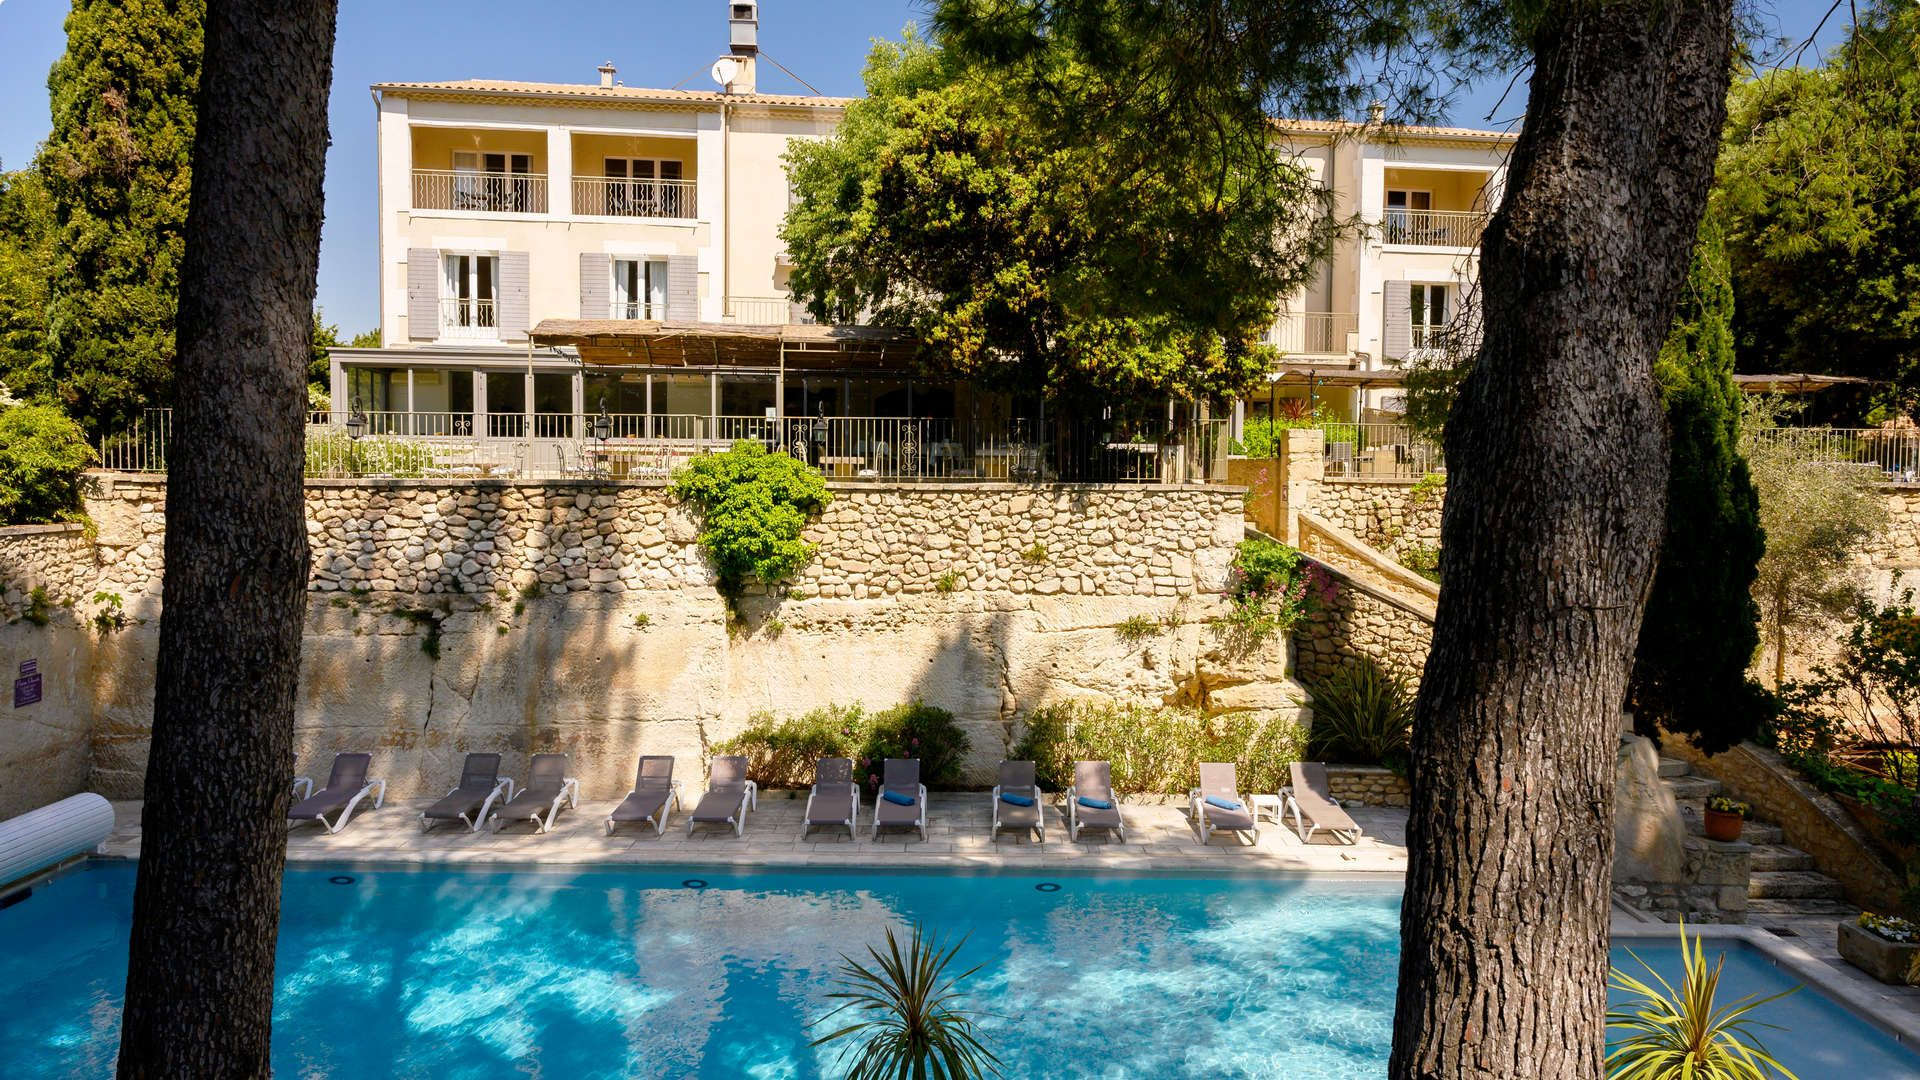 Grand plan sur la piscine et façade - hotel restaurant les baux de provence - Belesso